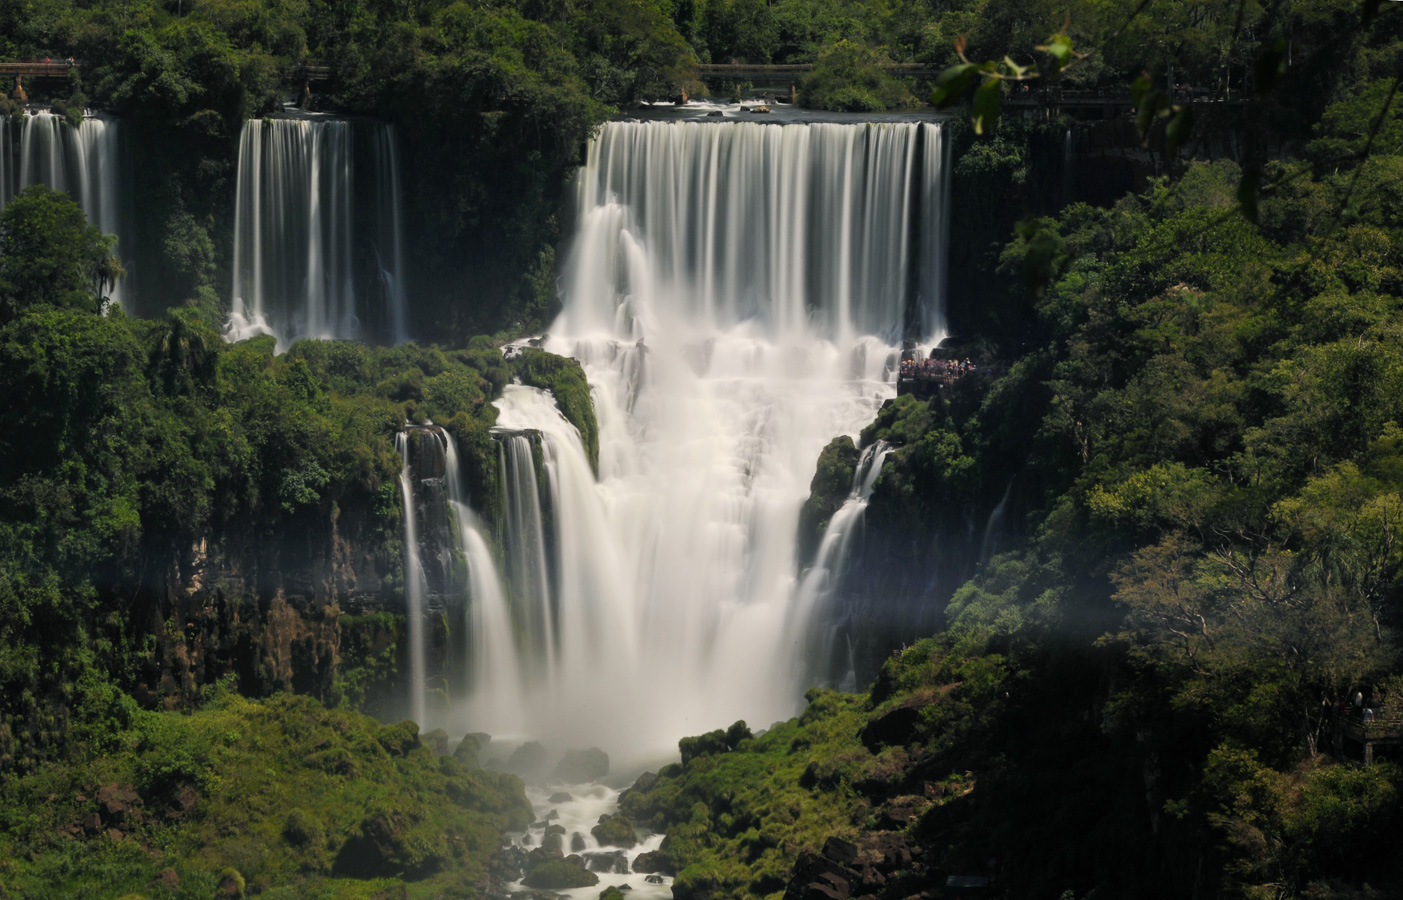 Cataratas del Iguazu [160 mm, 5.0 Sek. bei f / 22, ISO 400]